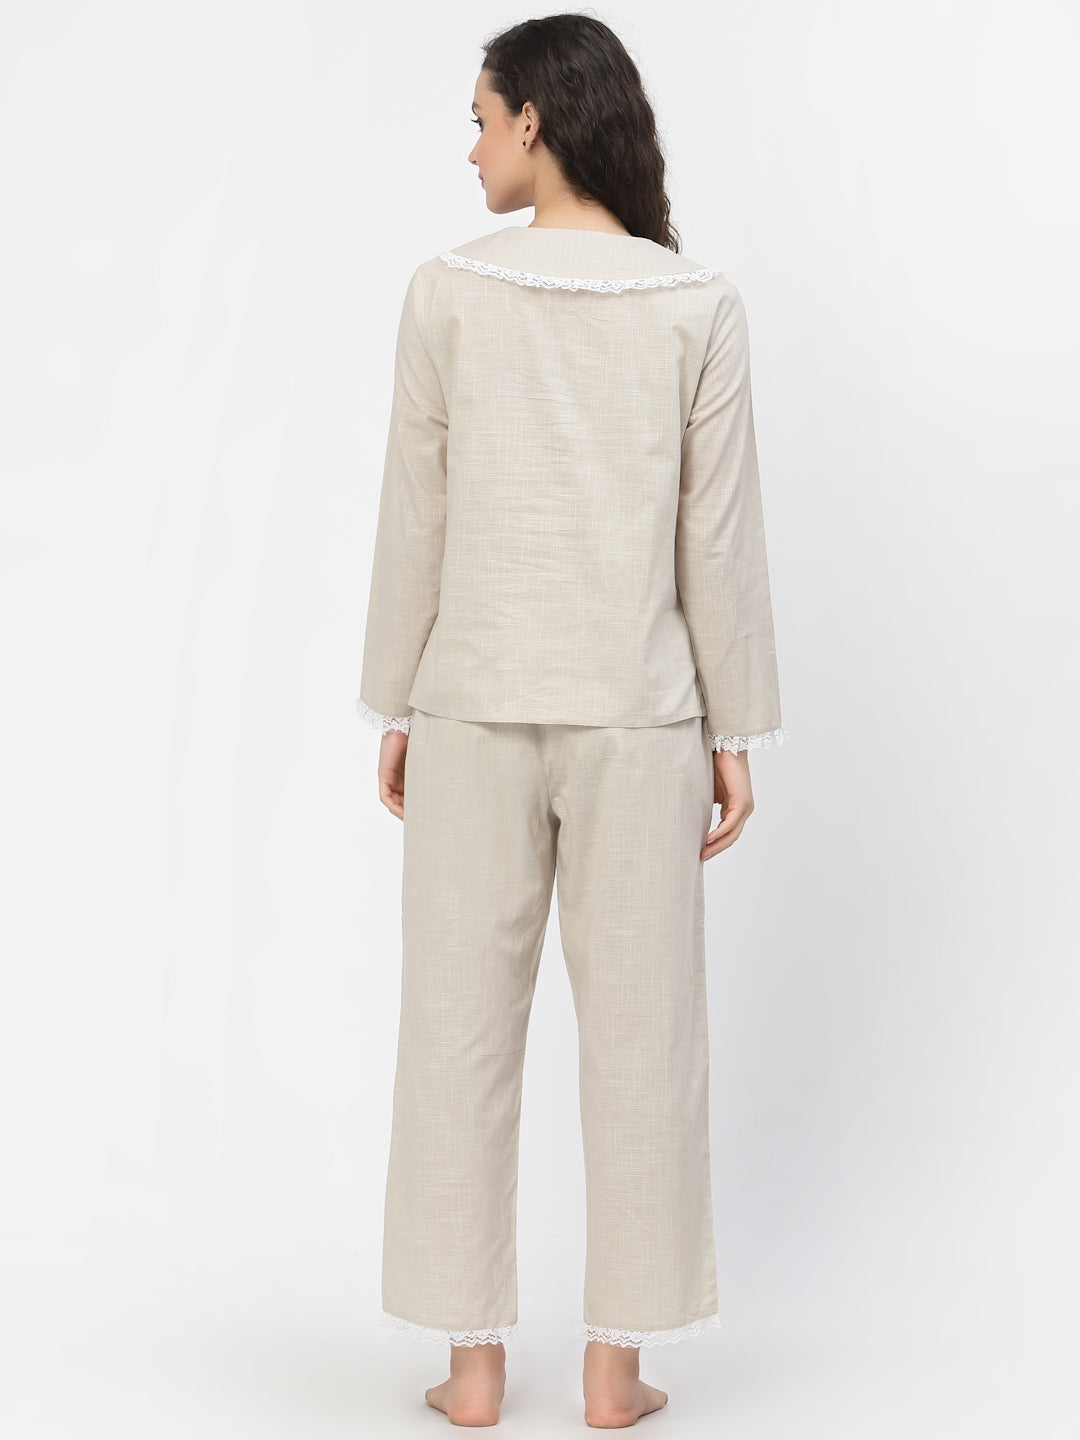 Blanc9 Lacy Cotton Beige Pretty Pyjama Night Suit-B9NW41BG